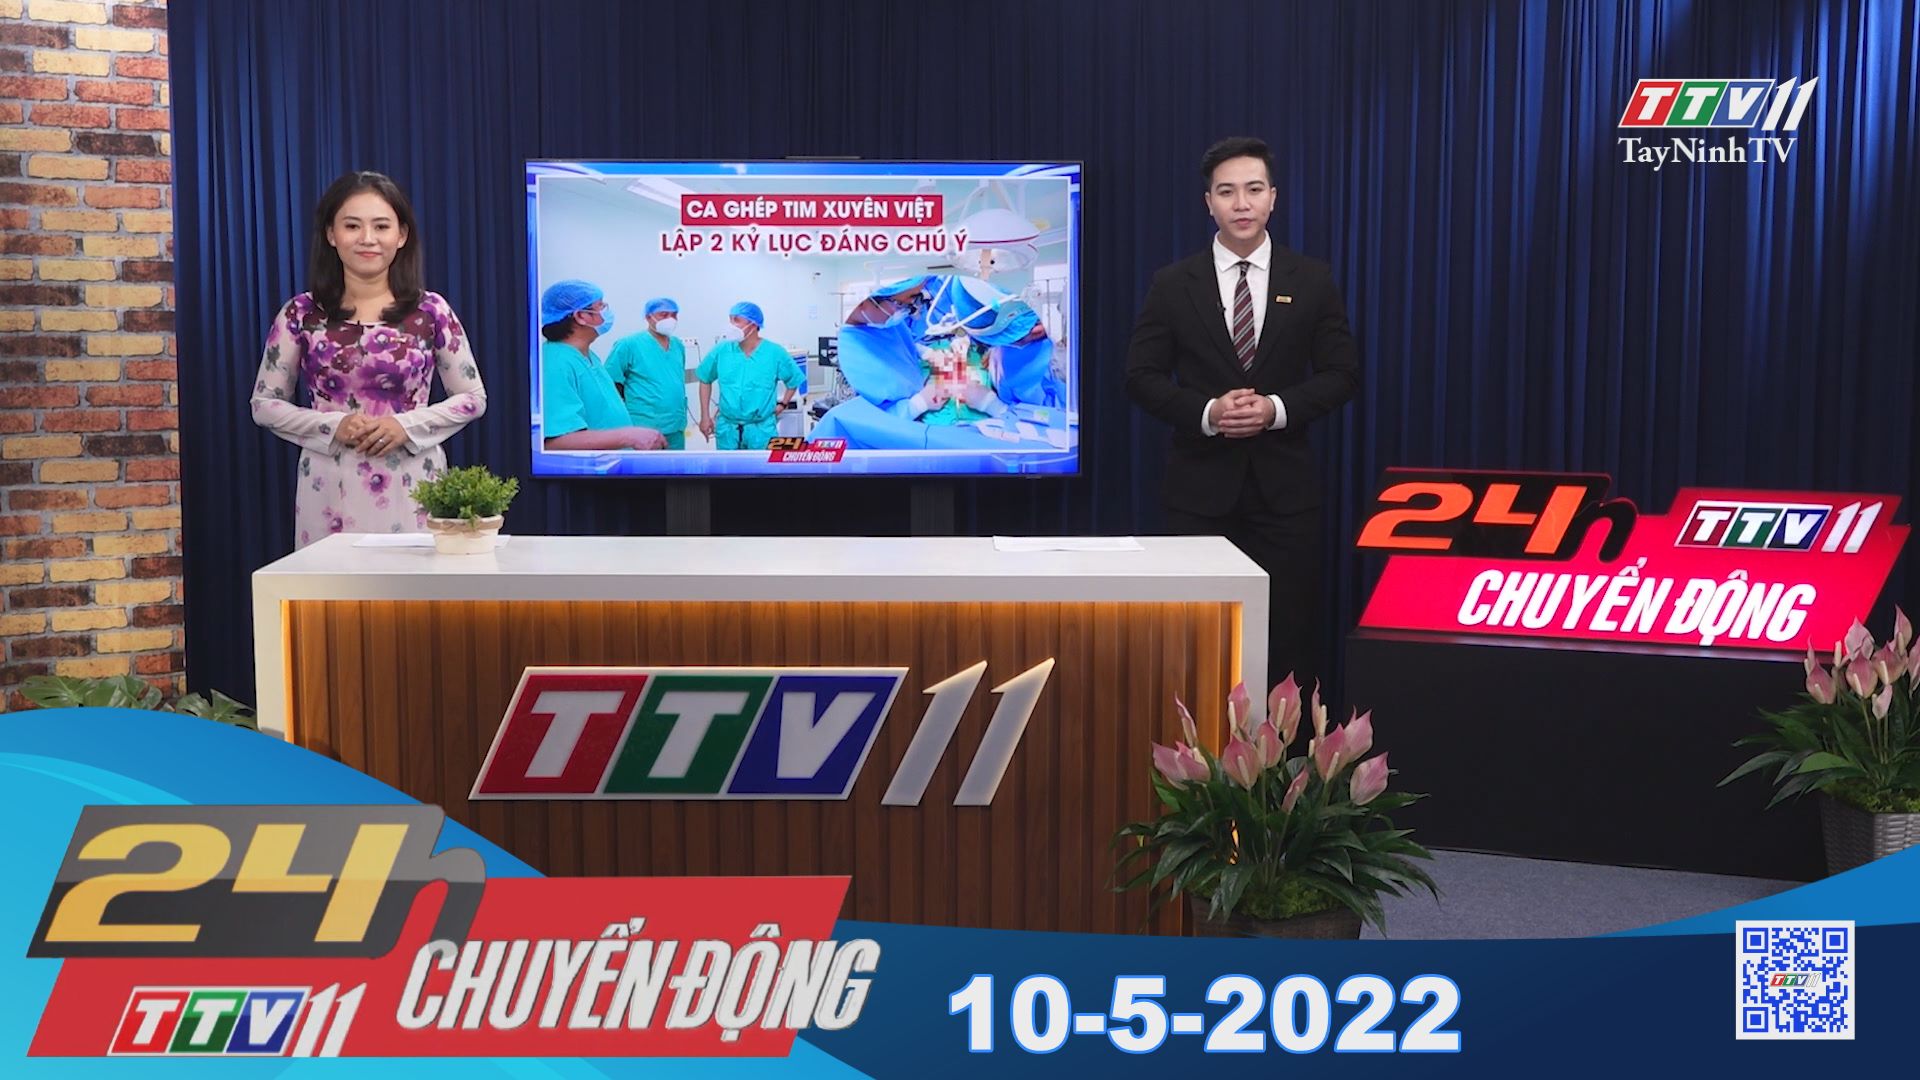 24h Chuyển động 10-5-2022 | Tin tức hôm nay | TayNinhTV